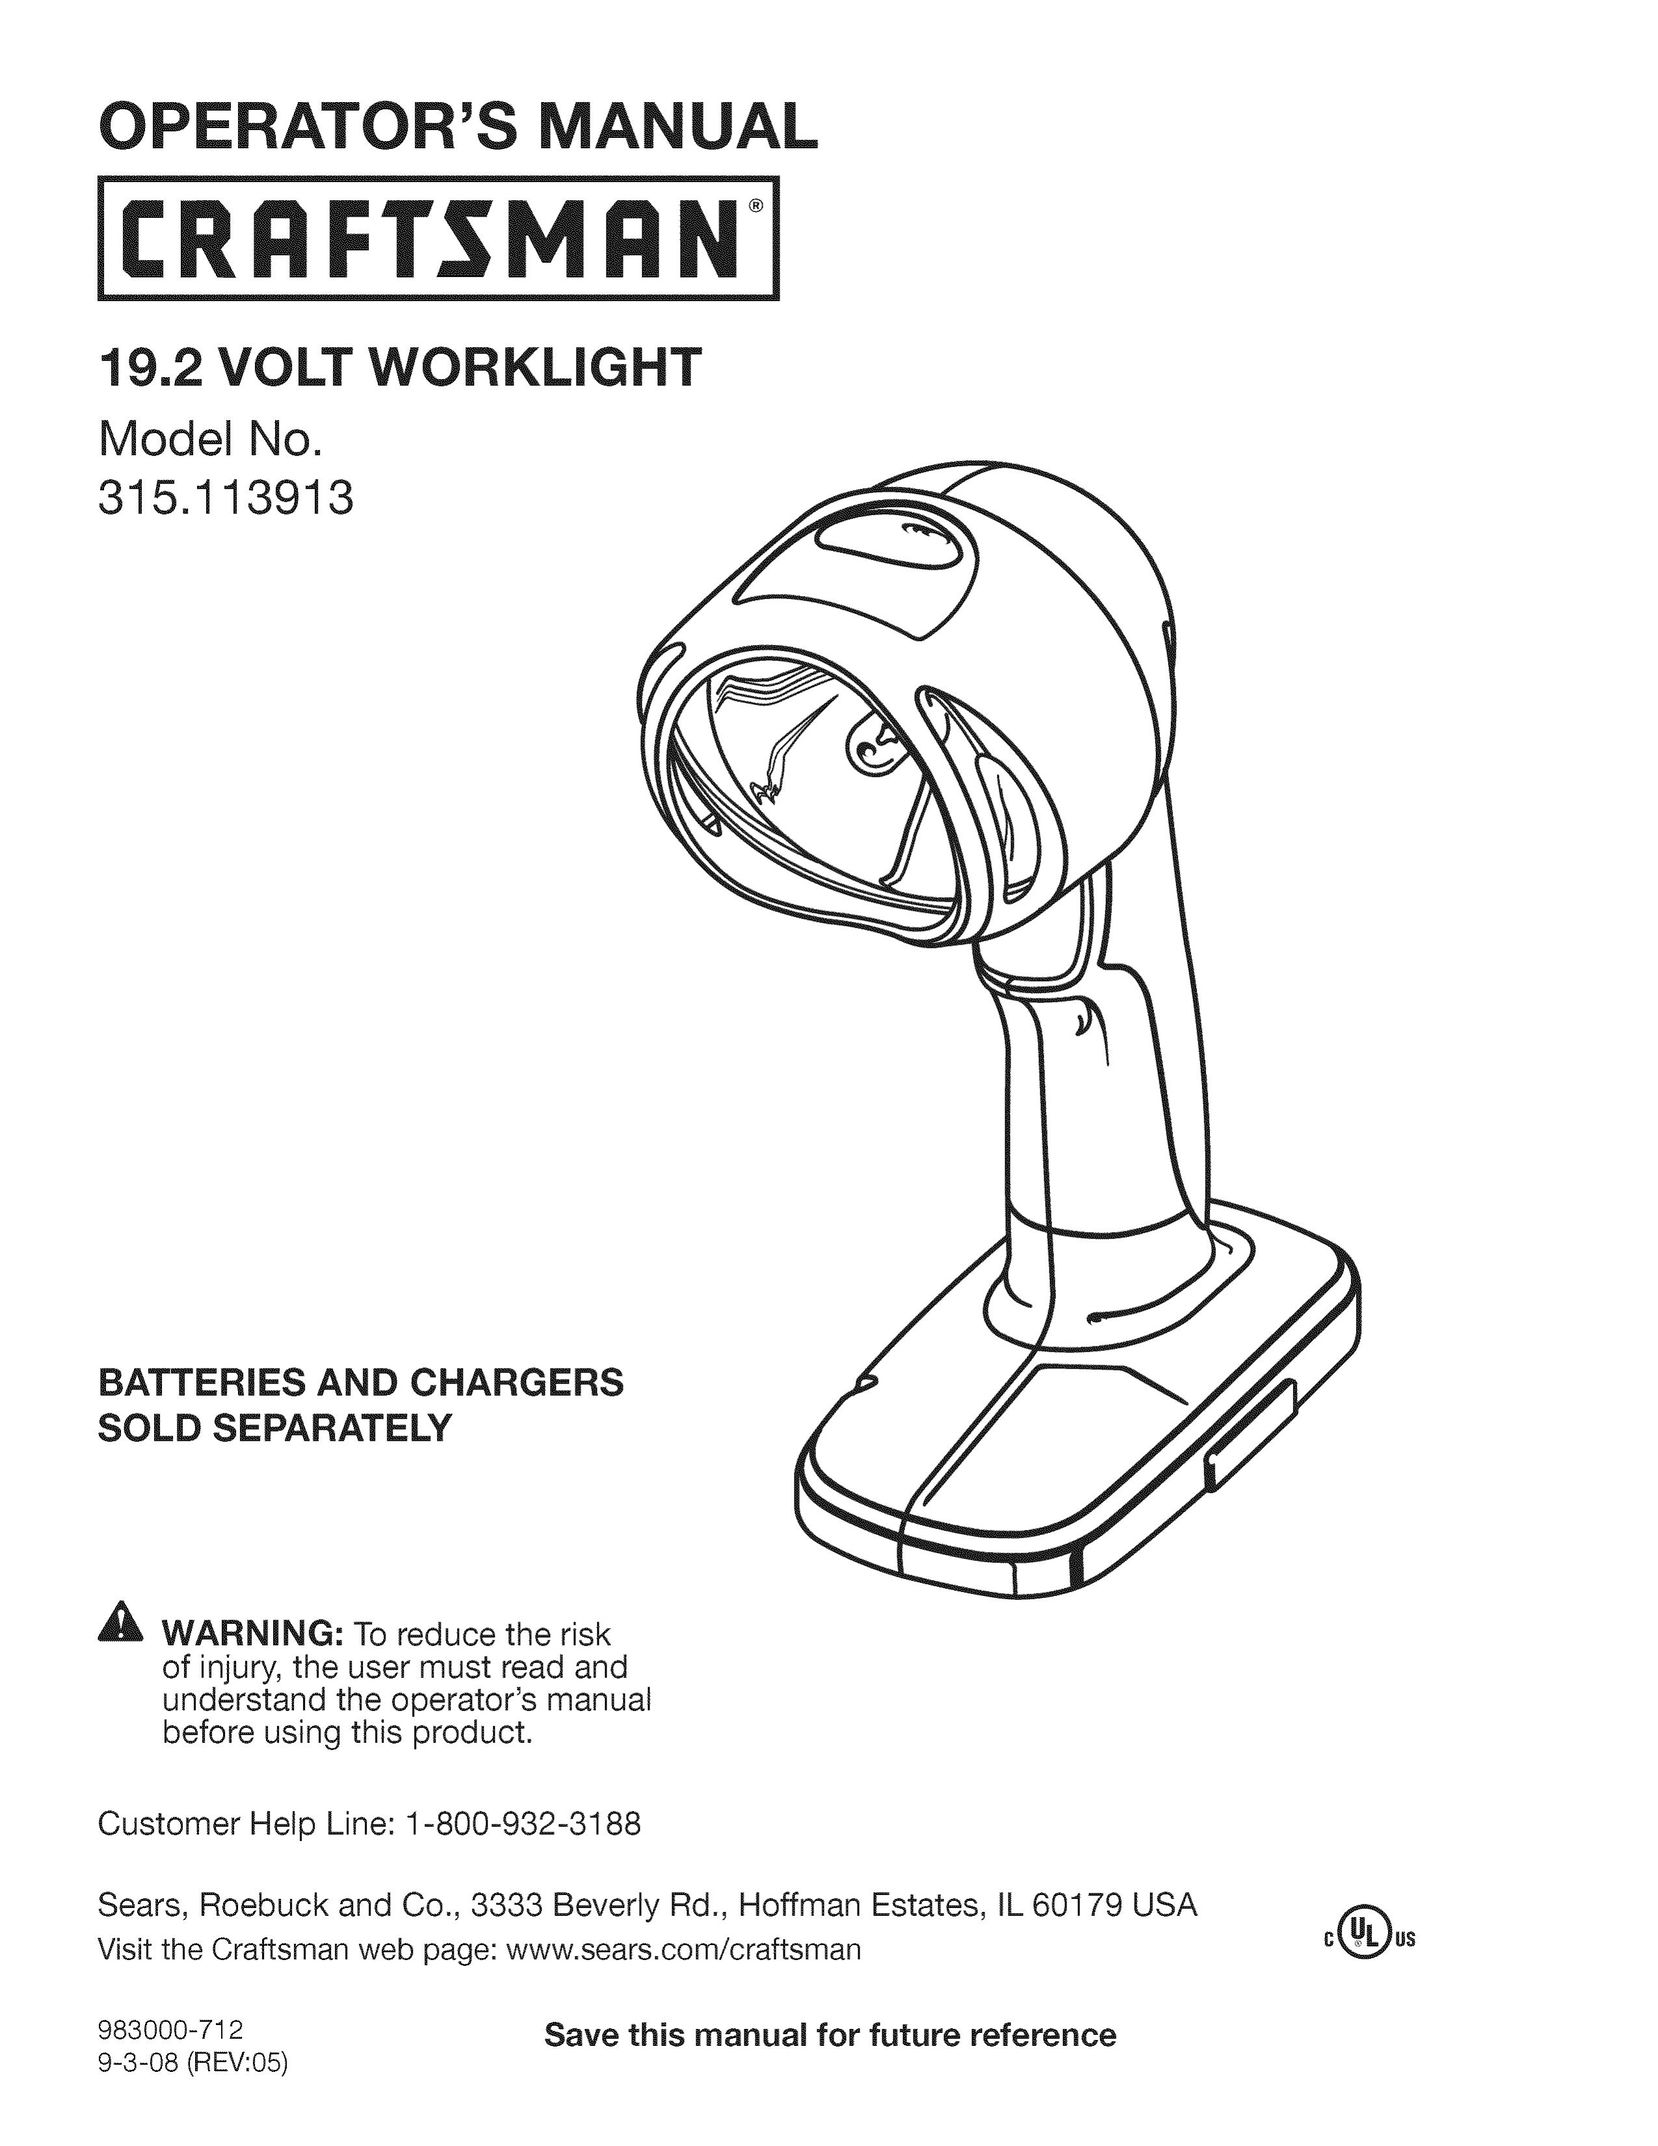 Craftsman 315.113913 Work Light User Manual